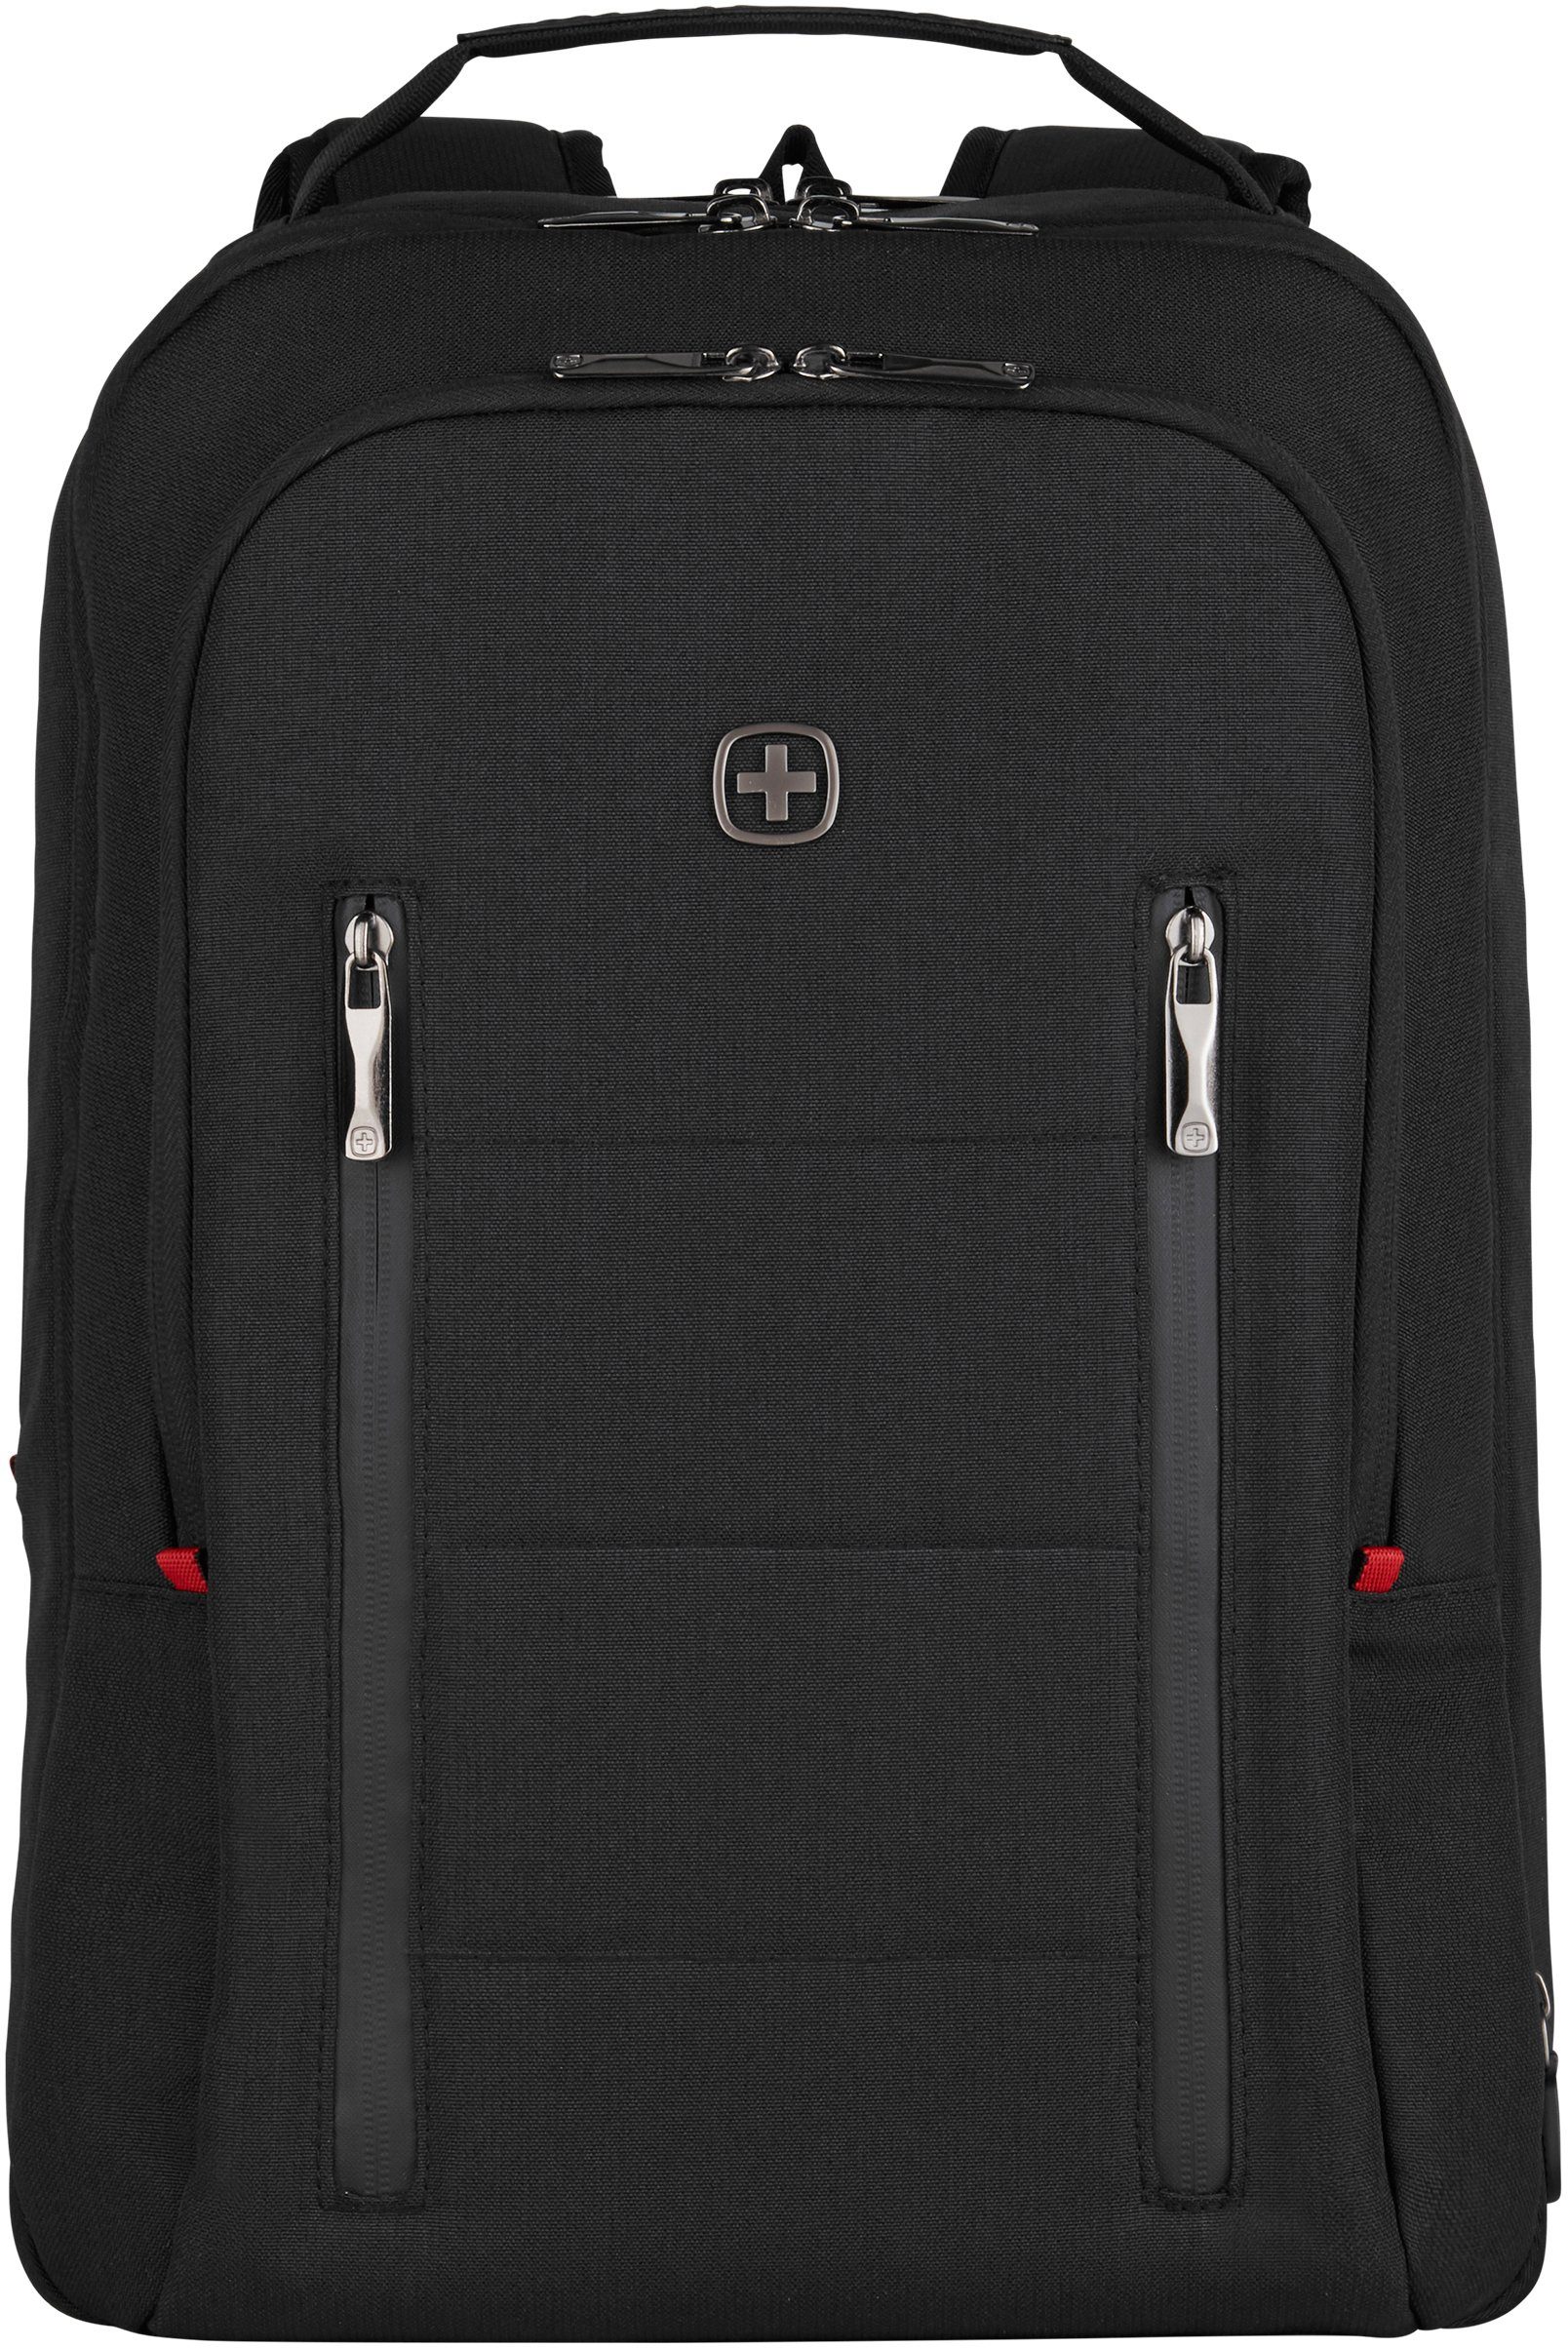 Wenger Laptoprucksack City Traveler, schwarz, cm: 16 für Laptops x Abmessung x 22 42 38 in Zoll, HxBxT bis